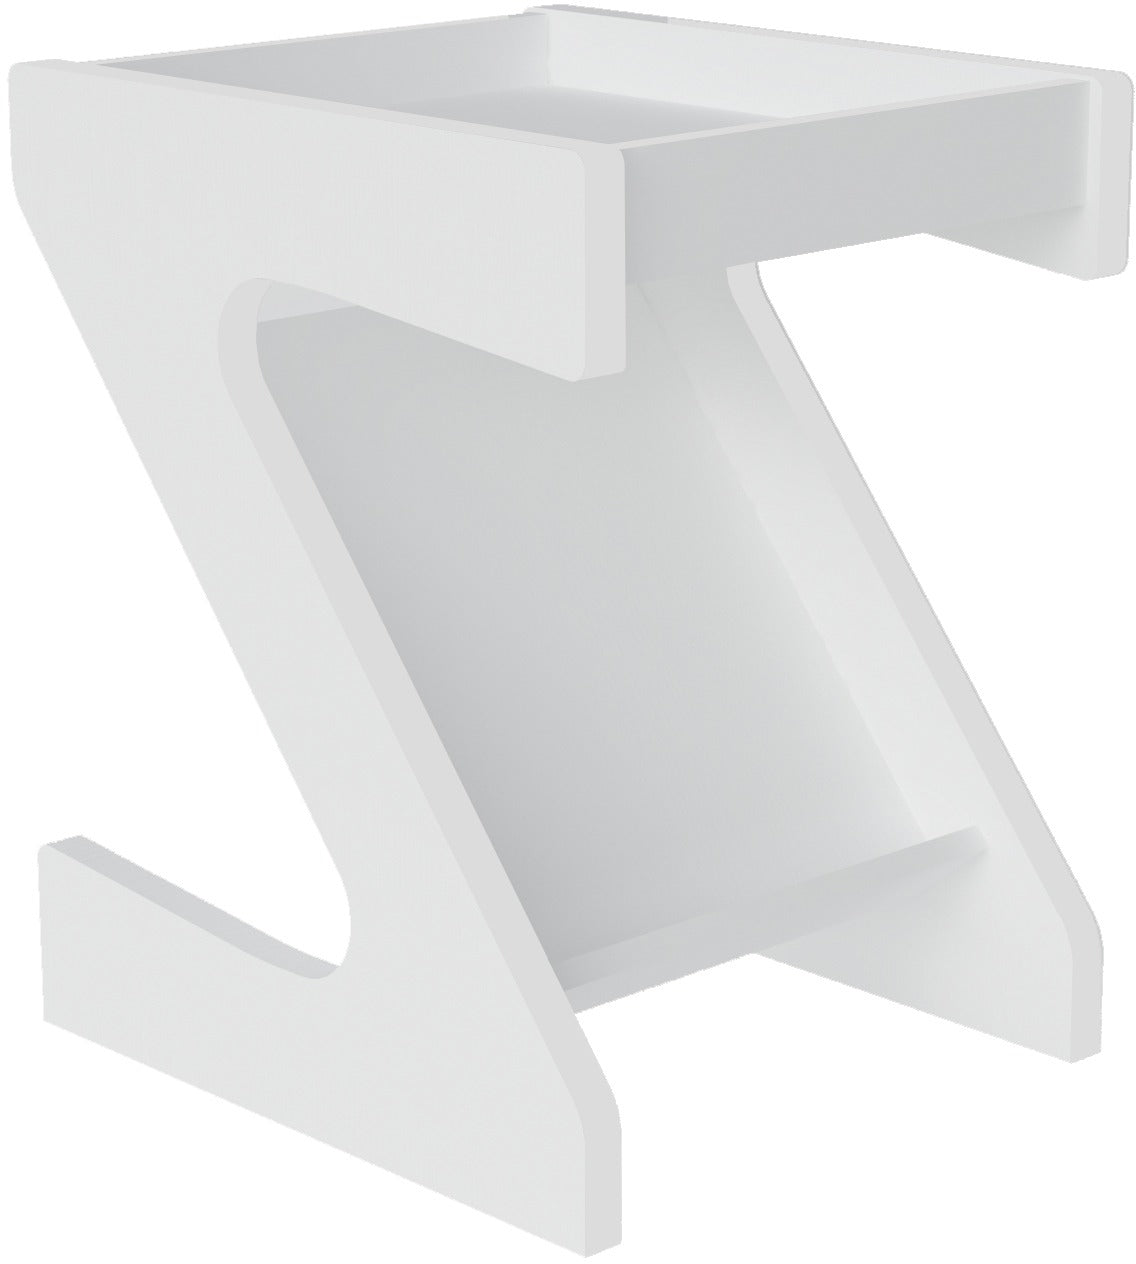 NAPLES-Z-SIDE-TABLE-WHITE-300-302-054-4.jpg